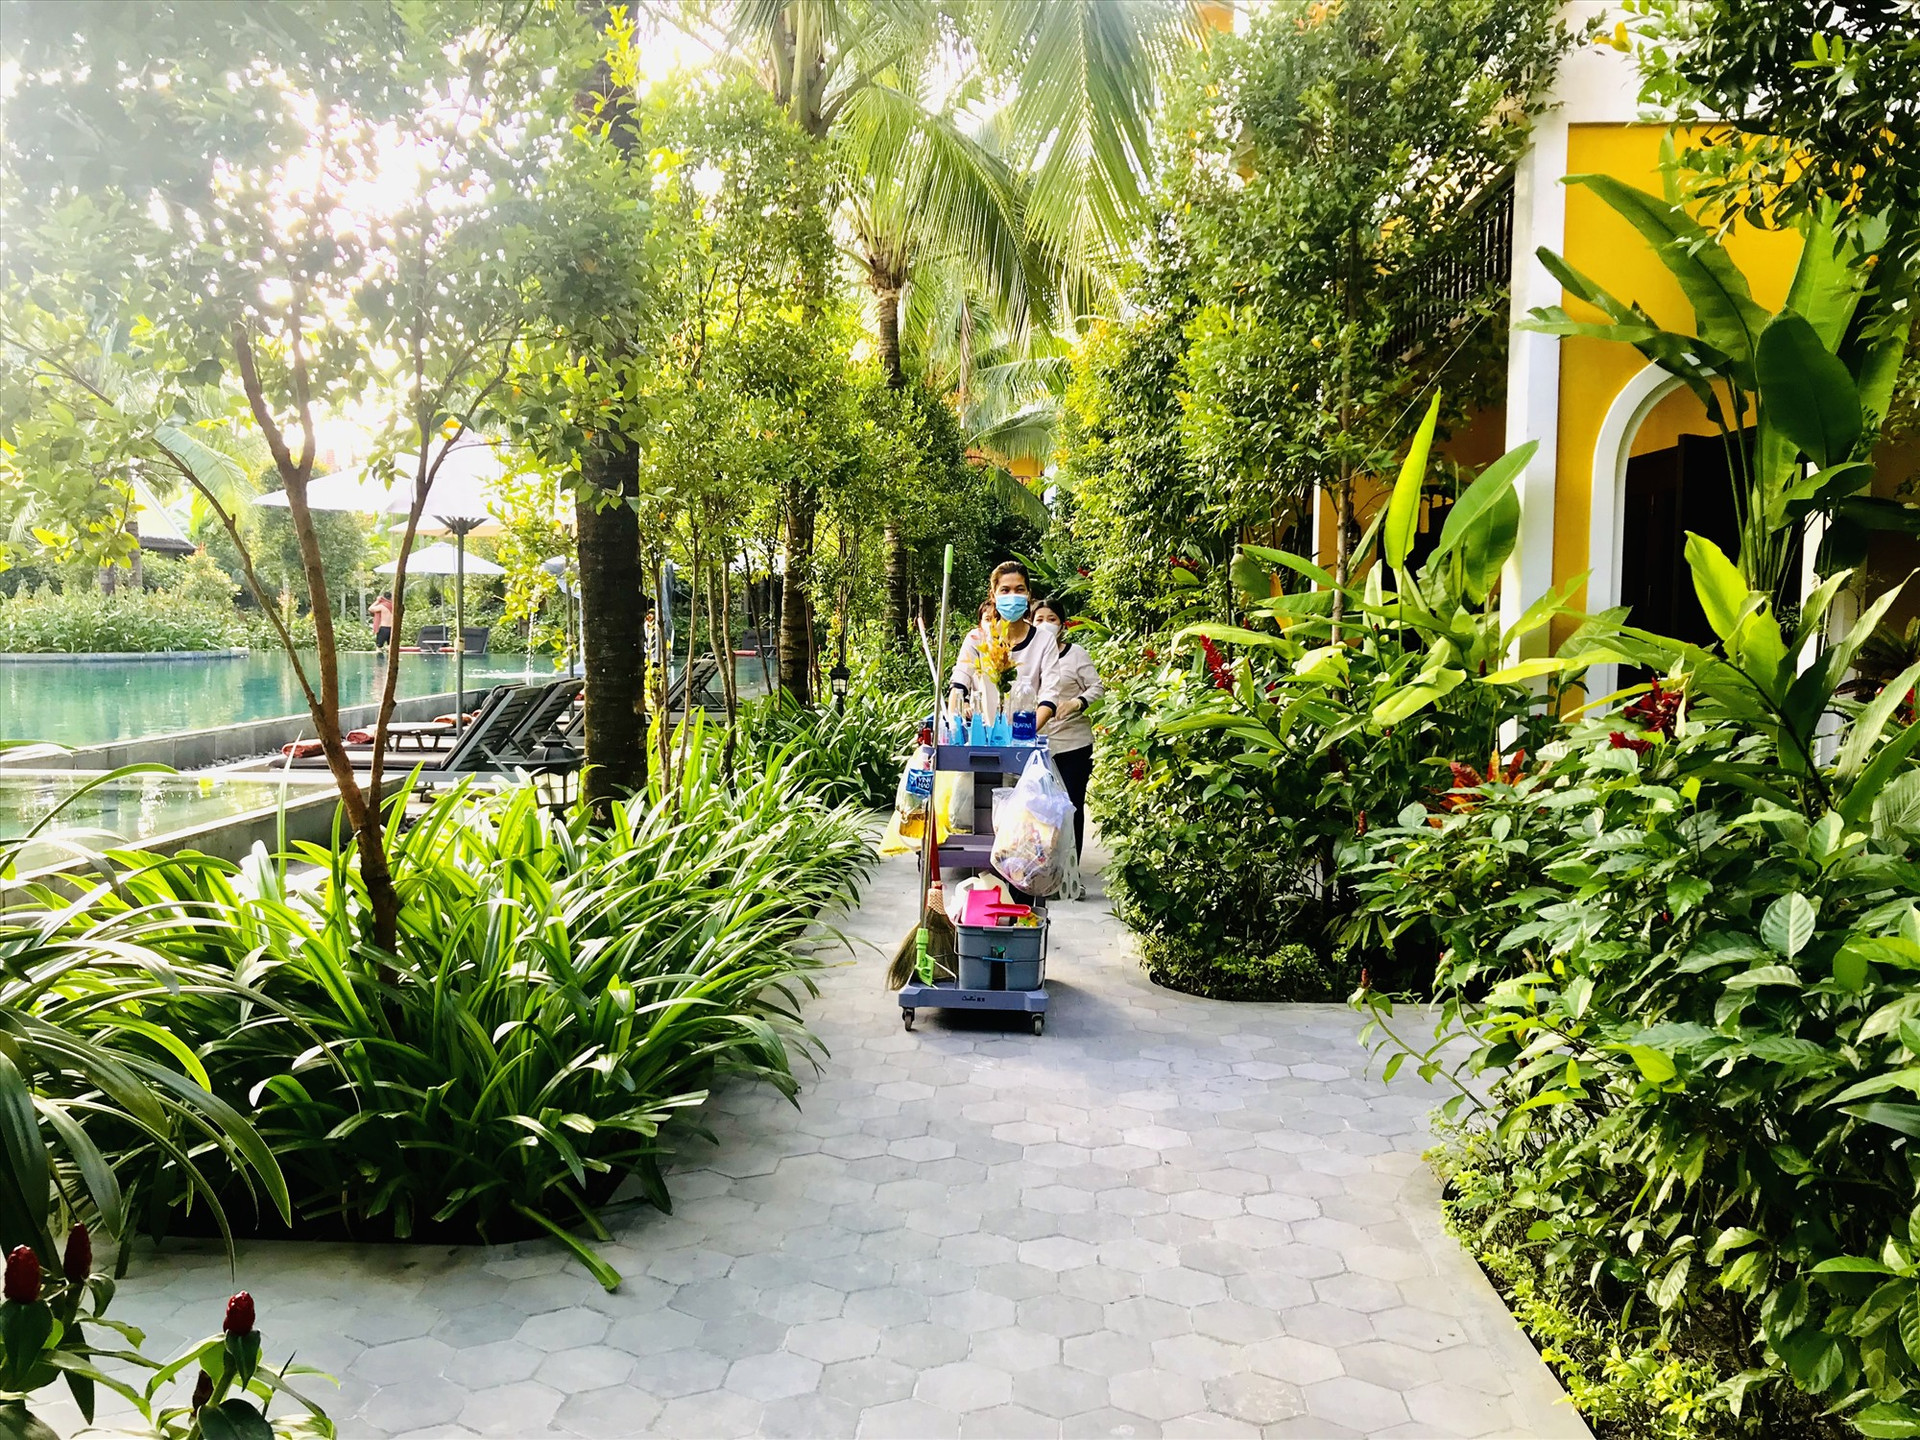 Hiện mới có 11 đơn vị được cấp chứng nhận du lịch xanh Quảng Nam, tỷ lệ rất thấp so với tổng số đơn vị du lịch hoạt động trên toàn tỉnh. Trong ảnh: La Siesta Hoi An Resort & Spa, một trong số các đơn vị đã được cấp chứng nhận du lịch xanh. Ảnh: Q.T